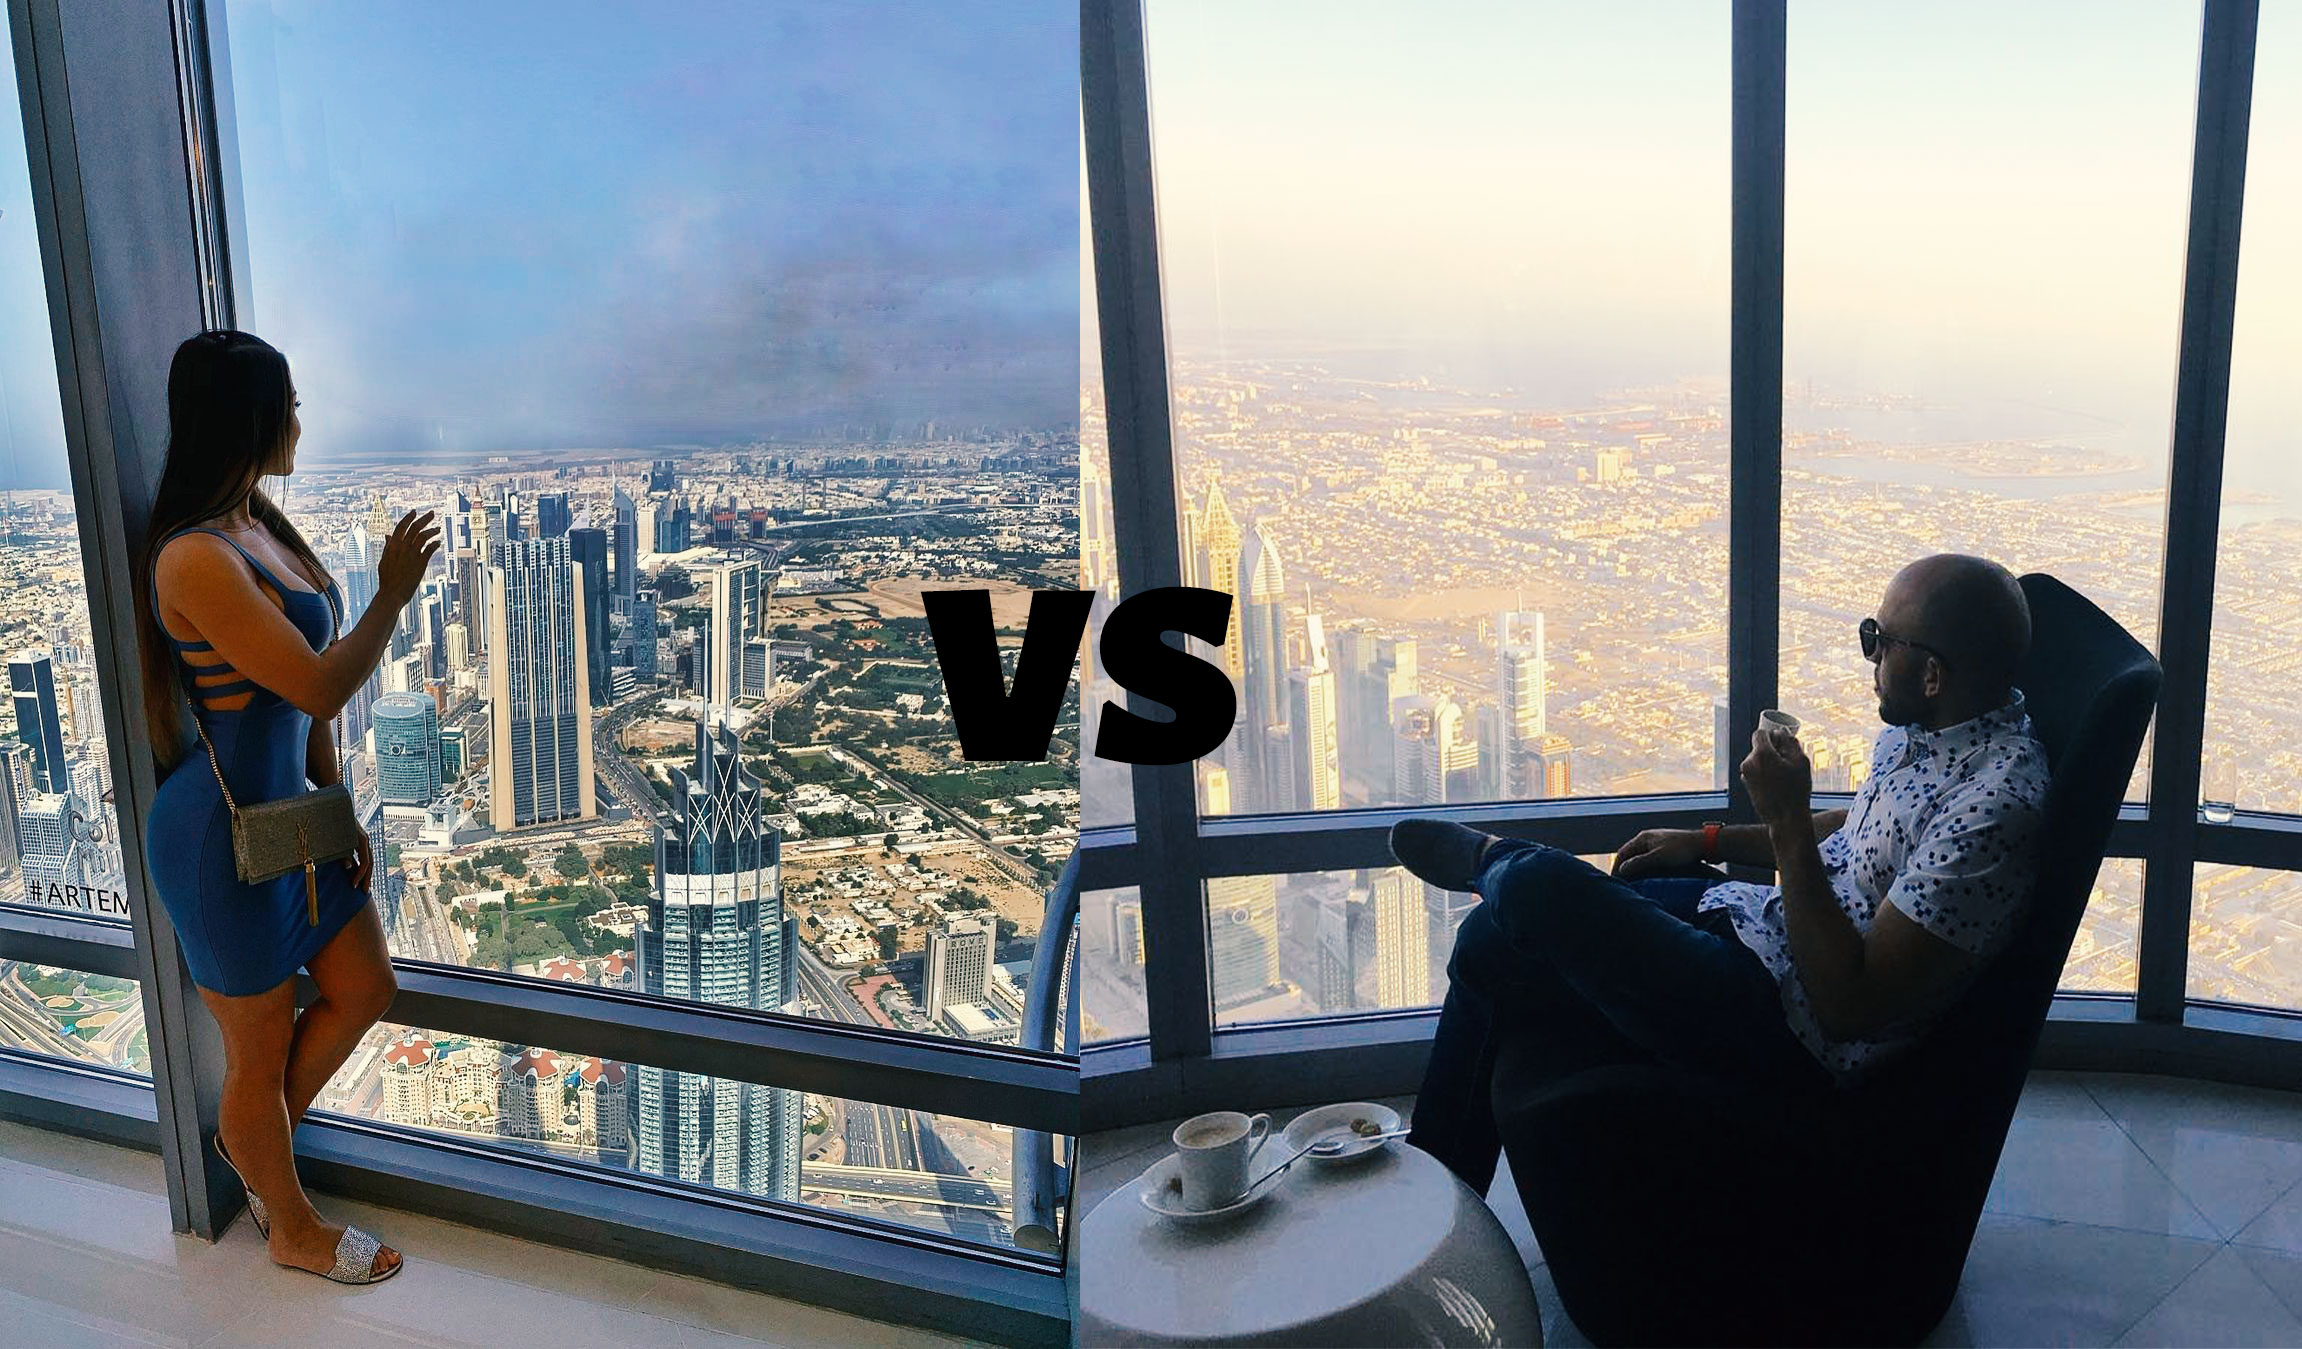 Burj Khalifa 124 vs 148 Floor